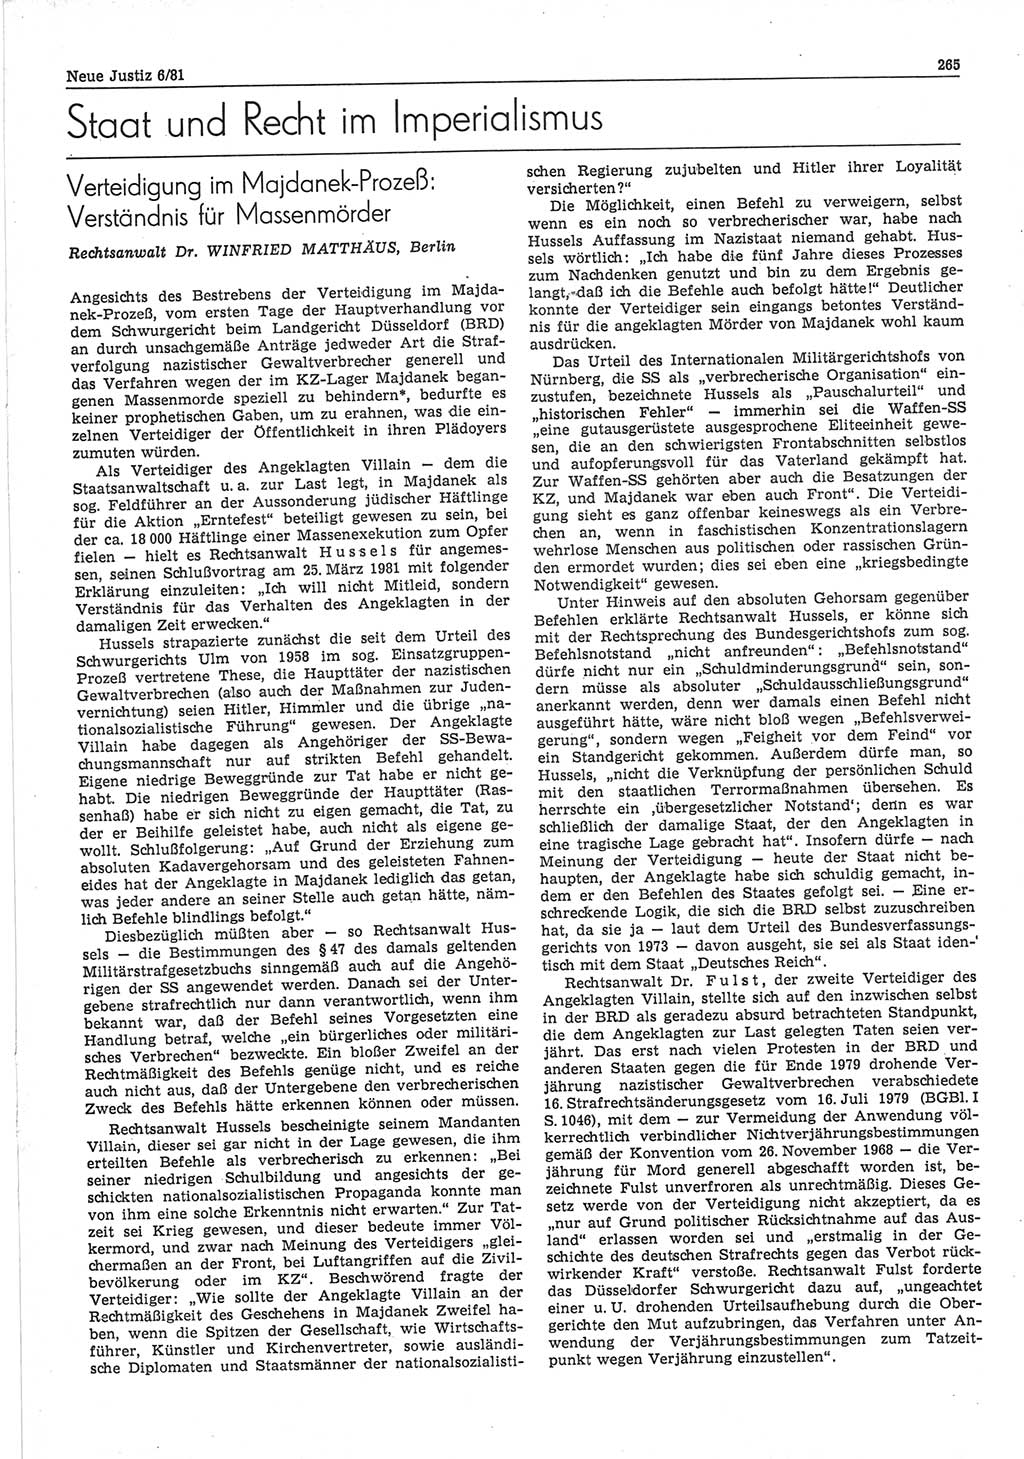 Neue Justiz (NJ), Zeitschrift für sozialistisches Recht und Gesetzlichkeit [Deutsche Demokratische Republik (DDR)], 35. Jahrgang 1981, Seite 265 (NJ DDR 1981, S. 265)